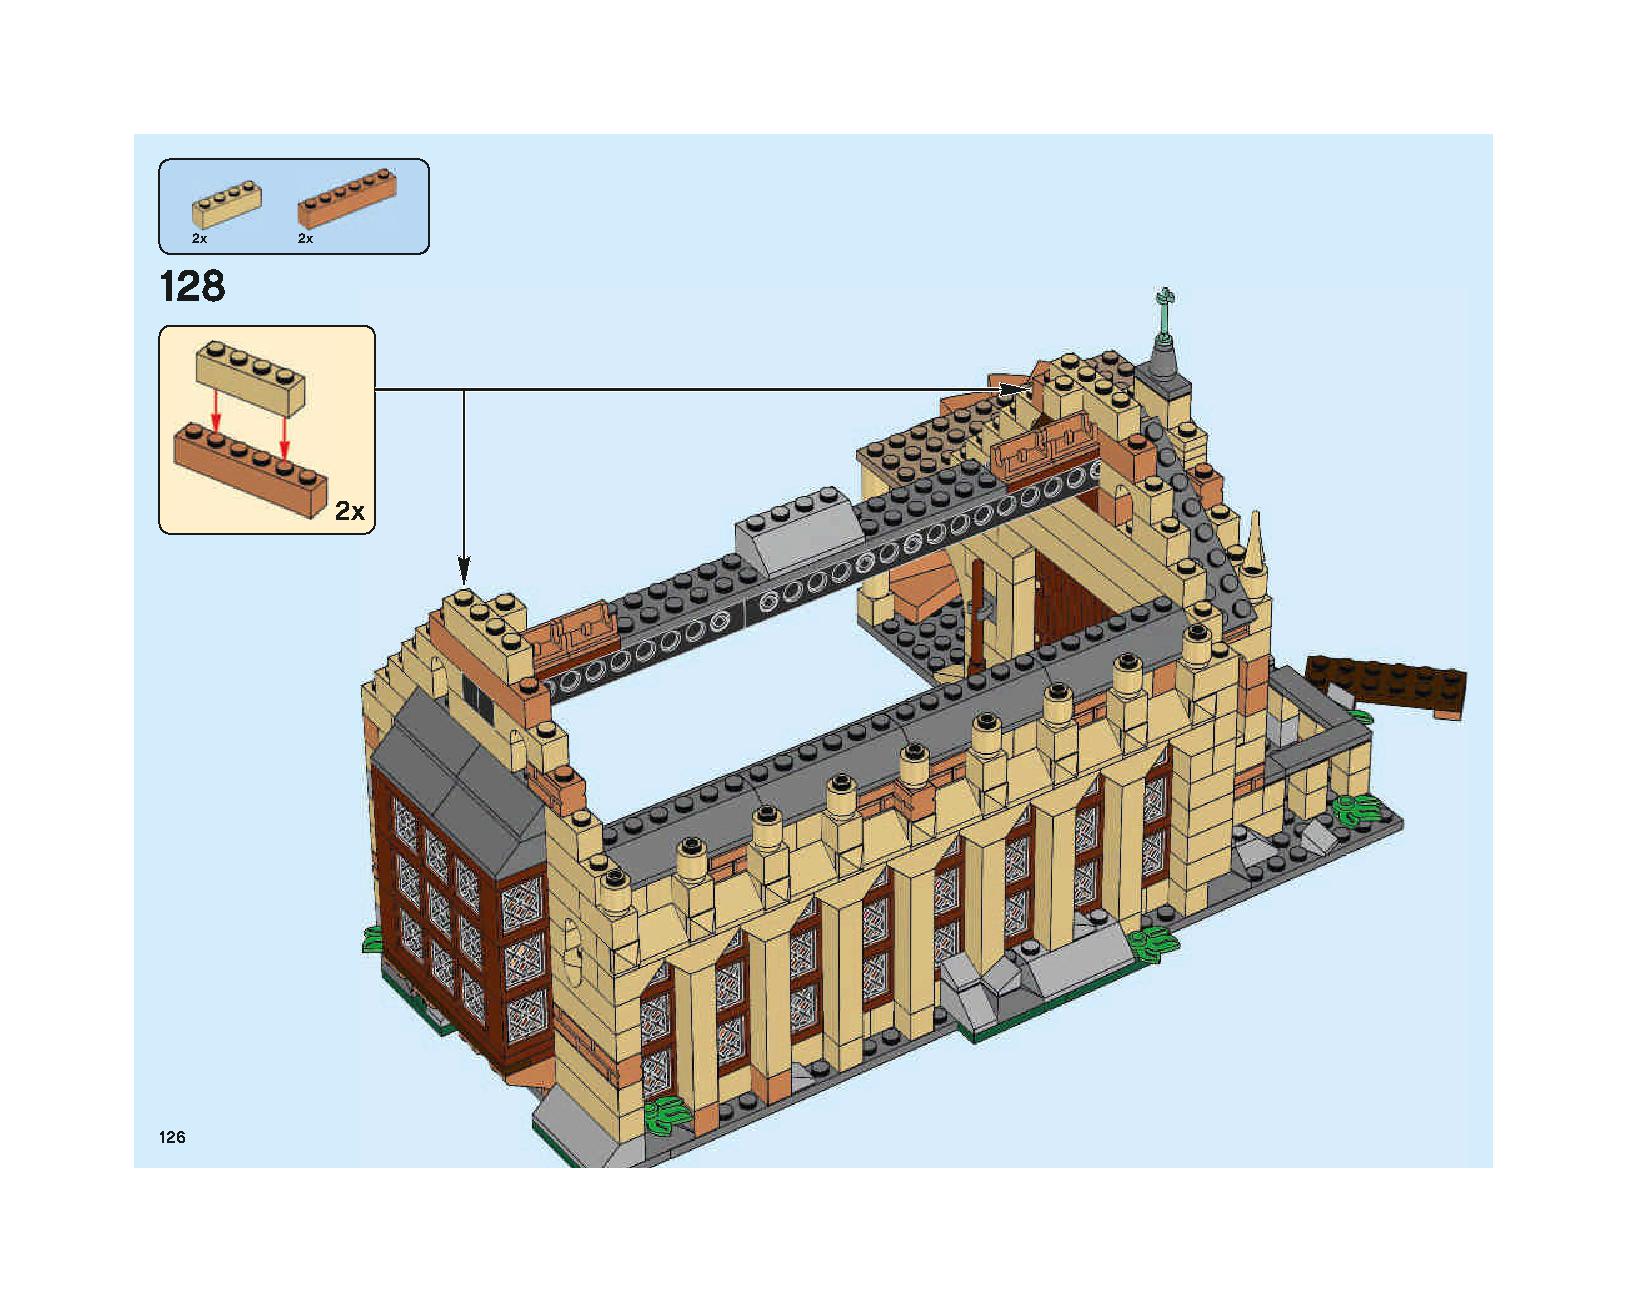 ホグワーツの大広間 75954 レゴの商品情報 レゴの説明書・組立方法 126 page